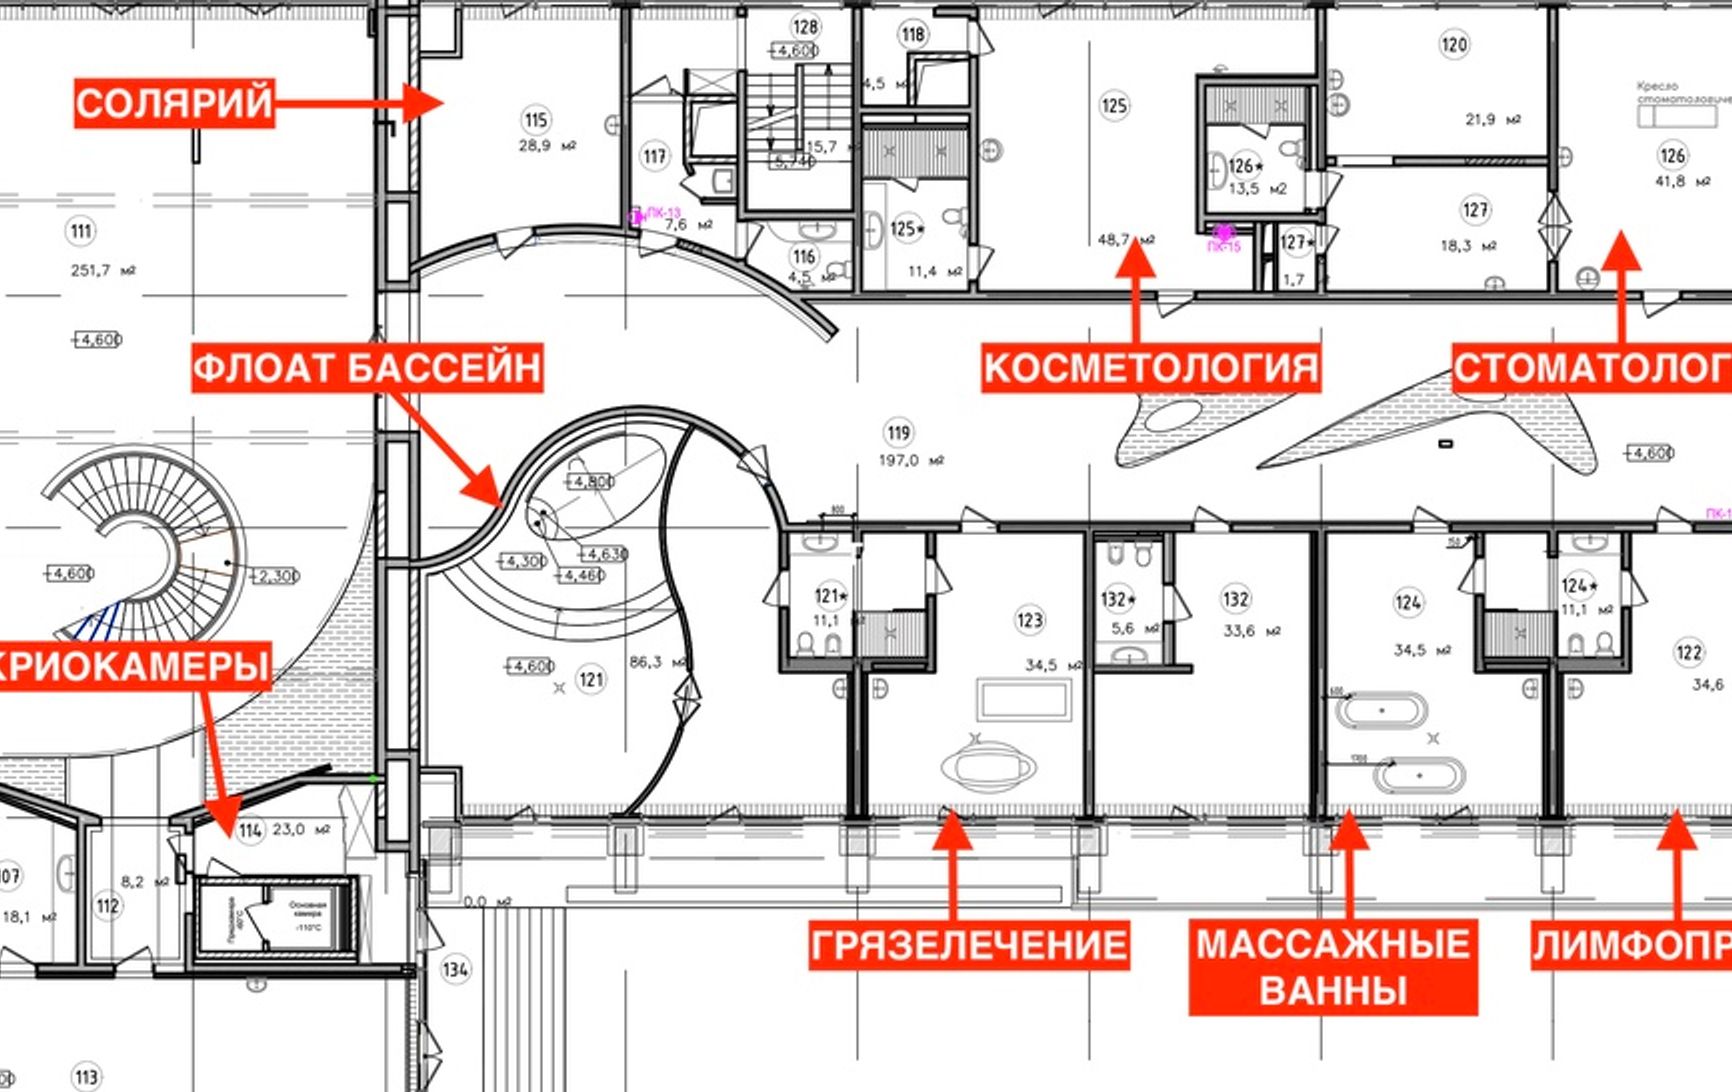 Кріокамери, масаж і грязелікування. ФБК виявив на Валдаї особистий СПА-комплекс Путіна площею 7000 м²